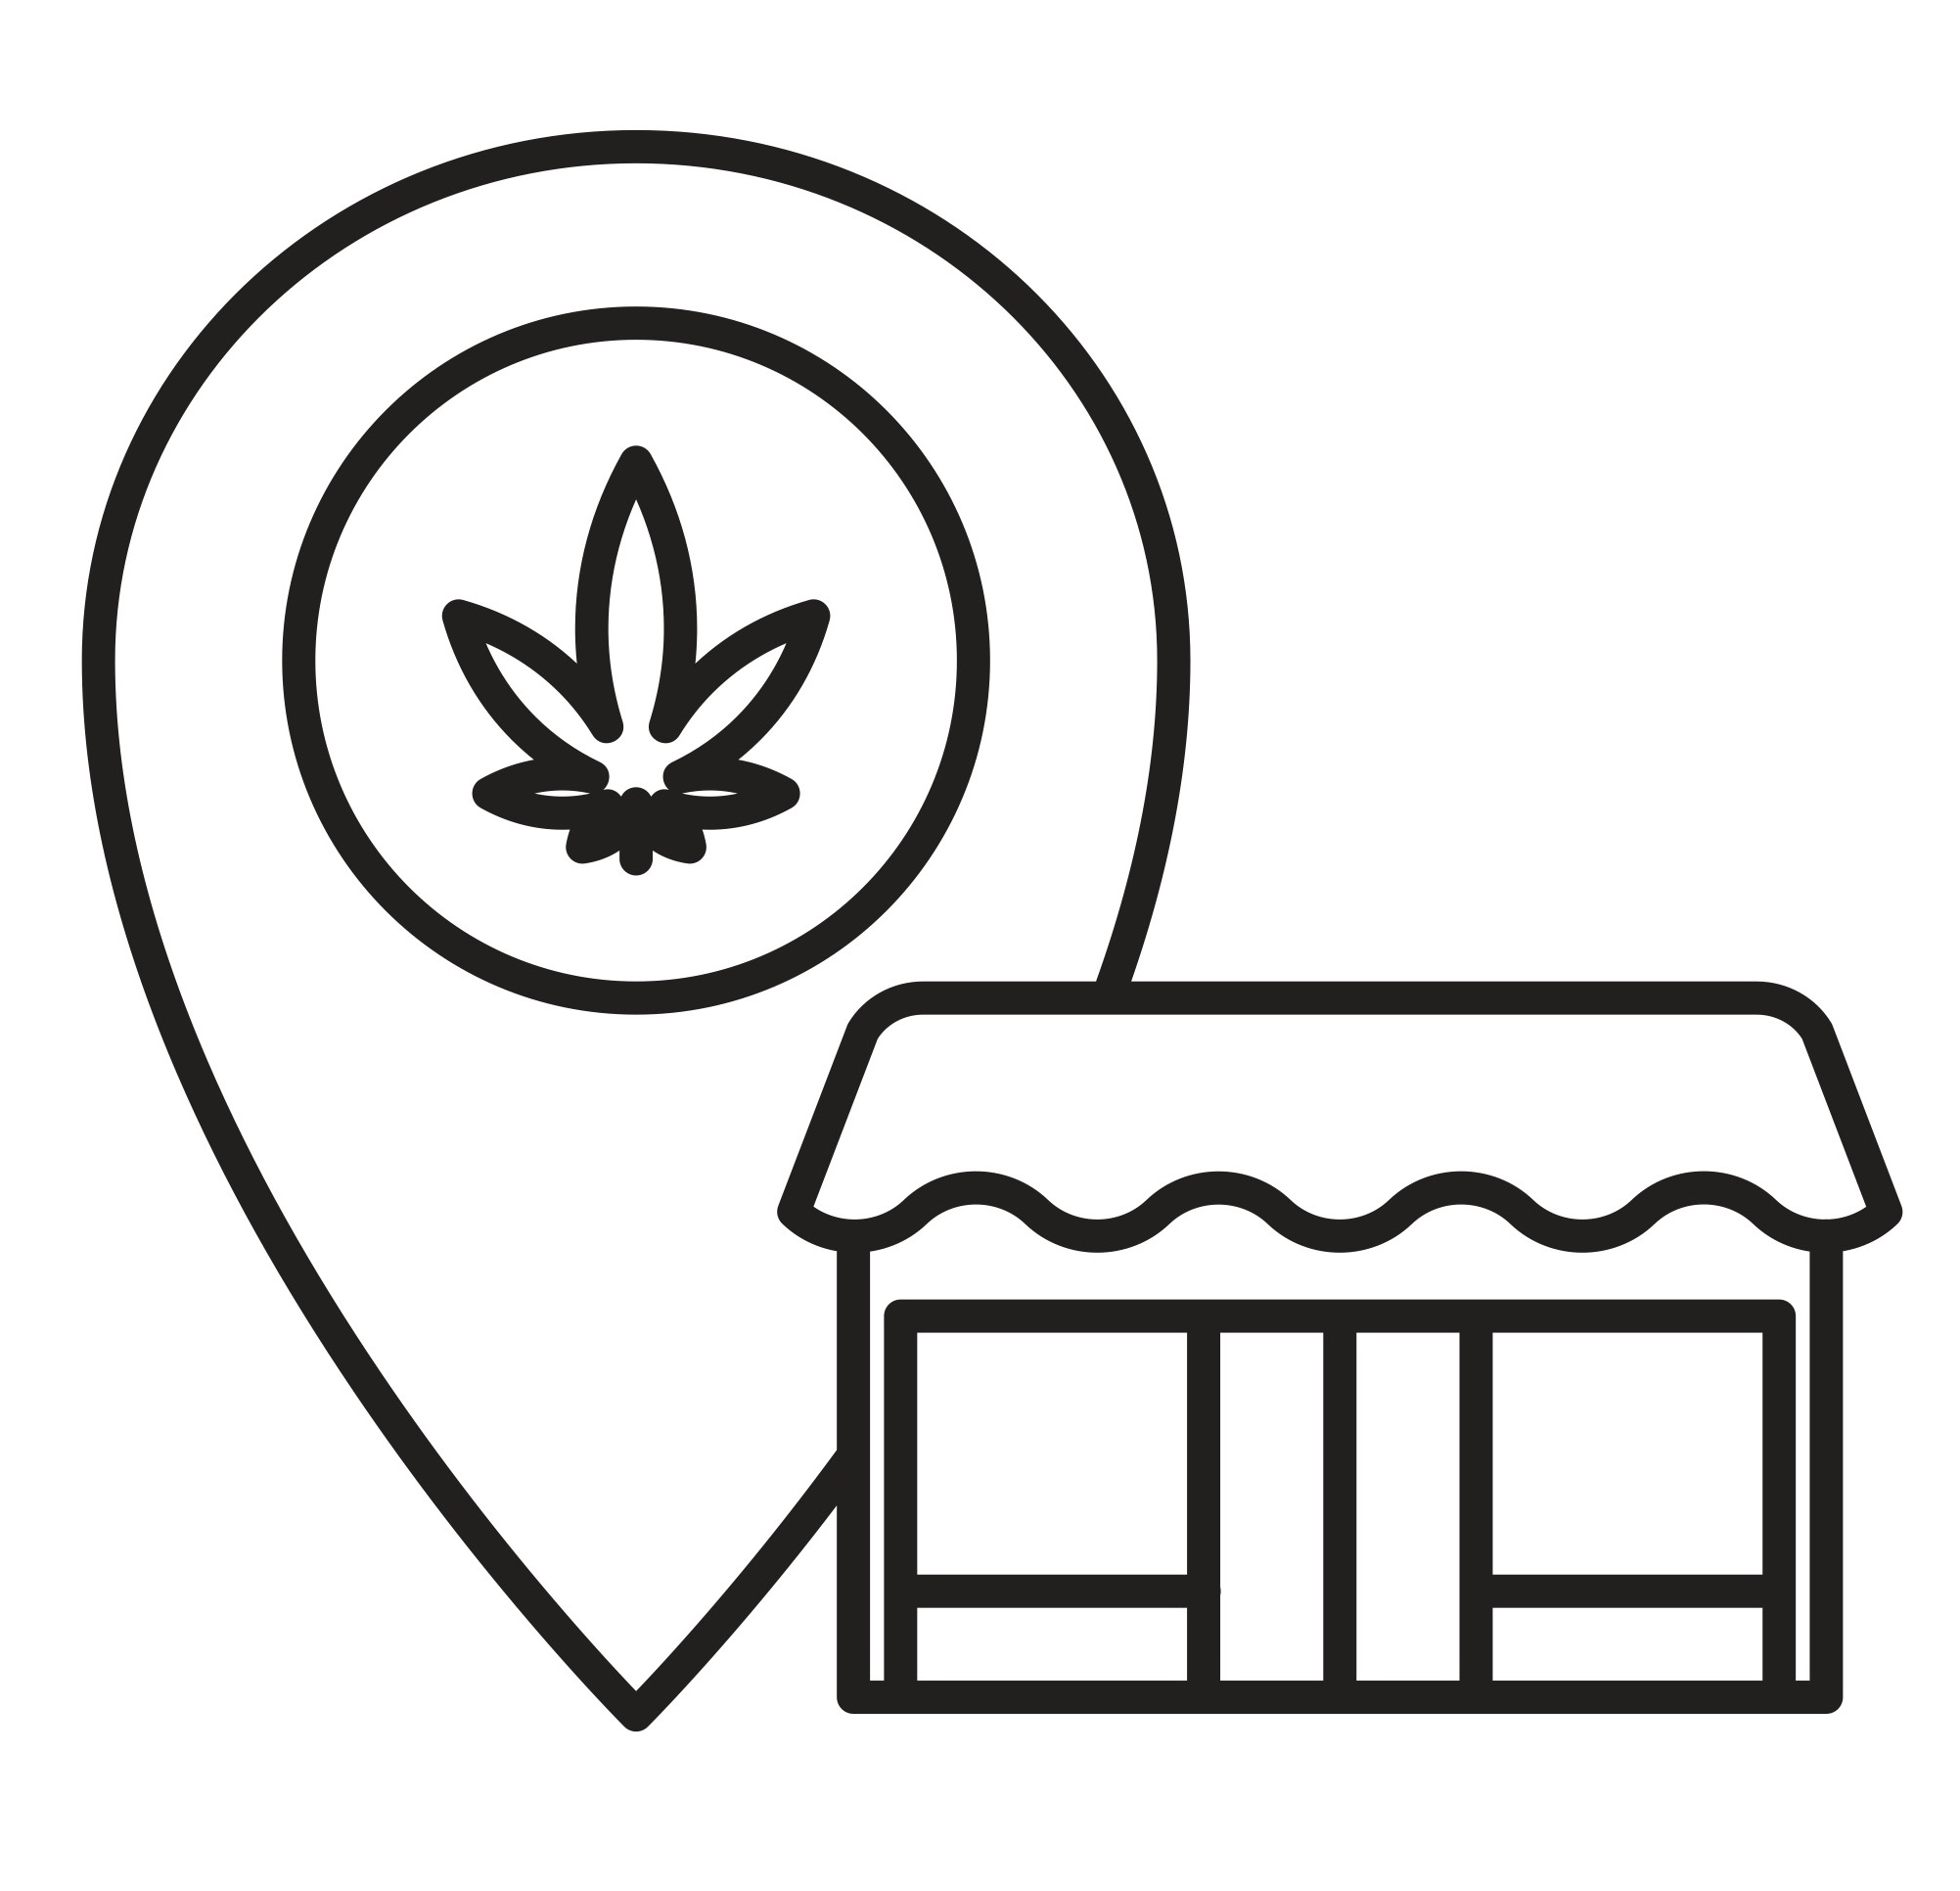 Minnesota Marijuana 